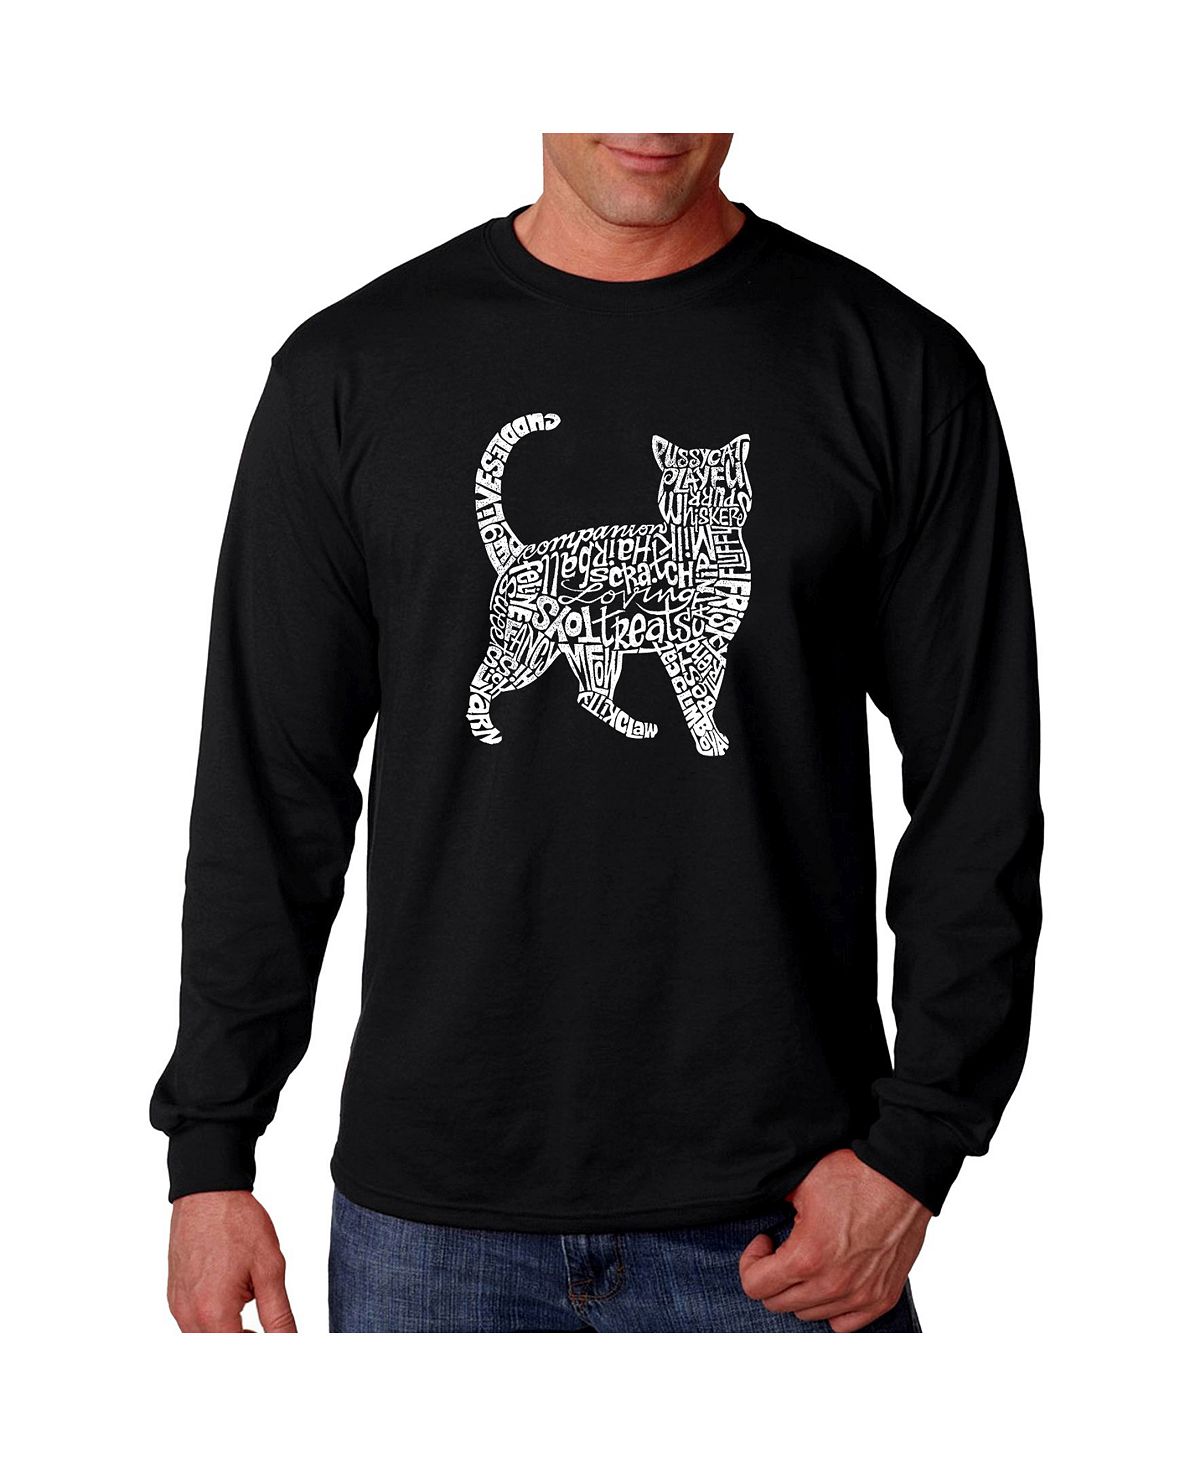 Мужская футболка с длинным рукавом word art - кошка LA Pop Art, черный мужская футболка с длинным рукавом word art route 66 la pop art черный